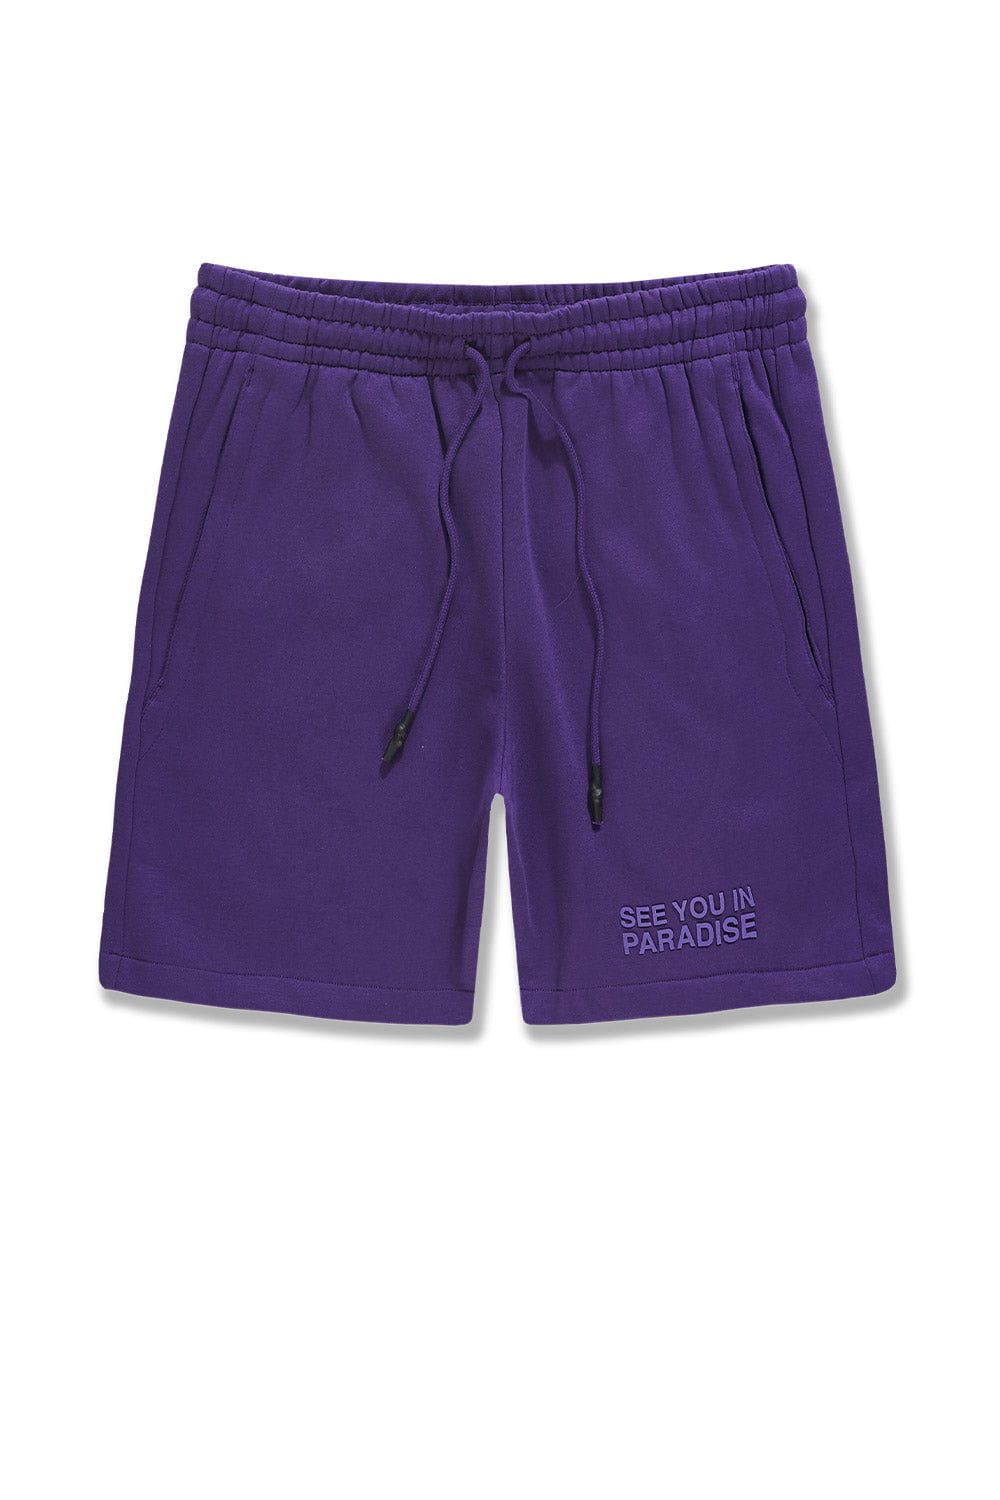 Jordan Craig Retro - Paradise Tonal Shorts Purple / S